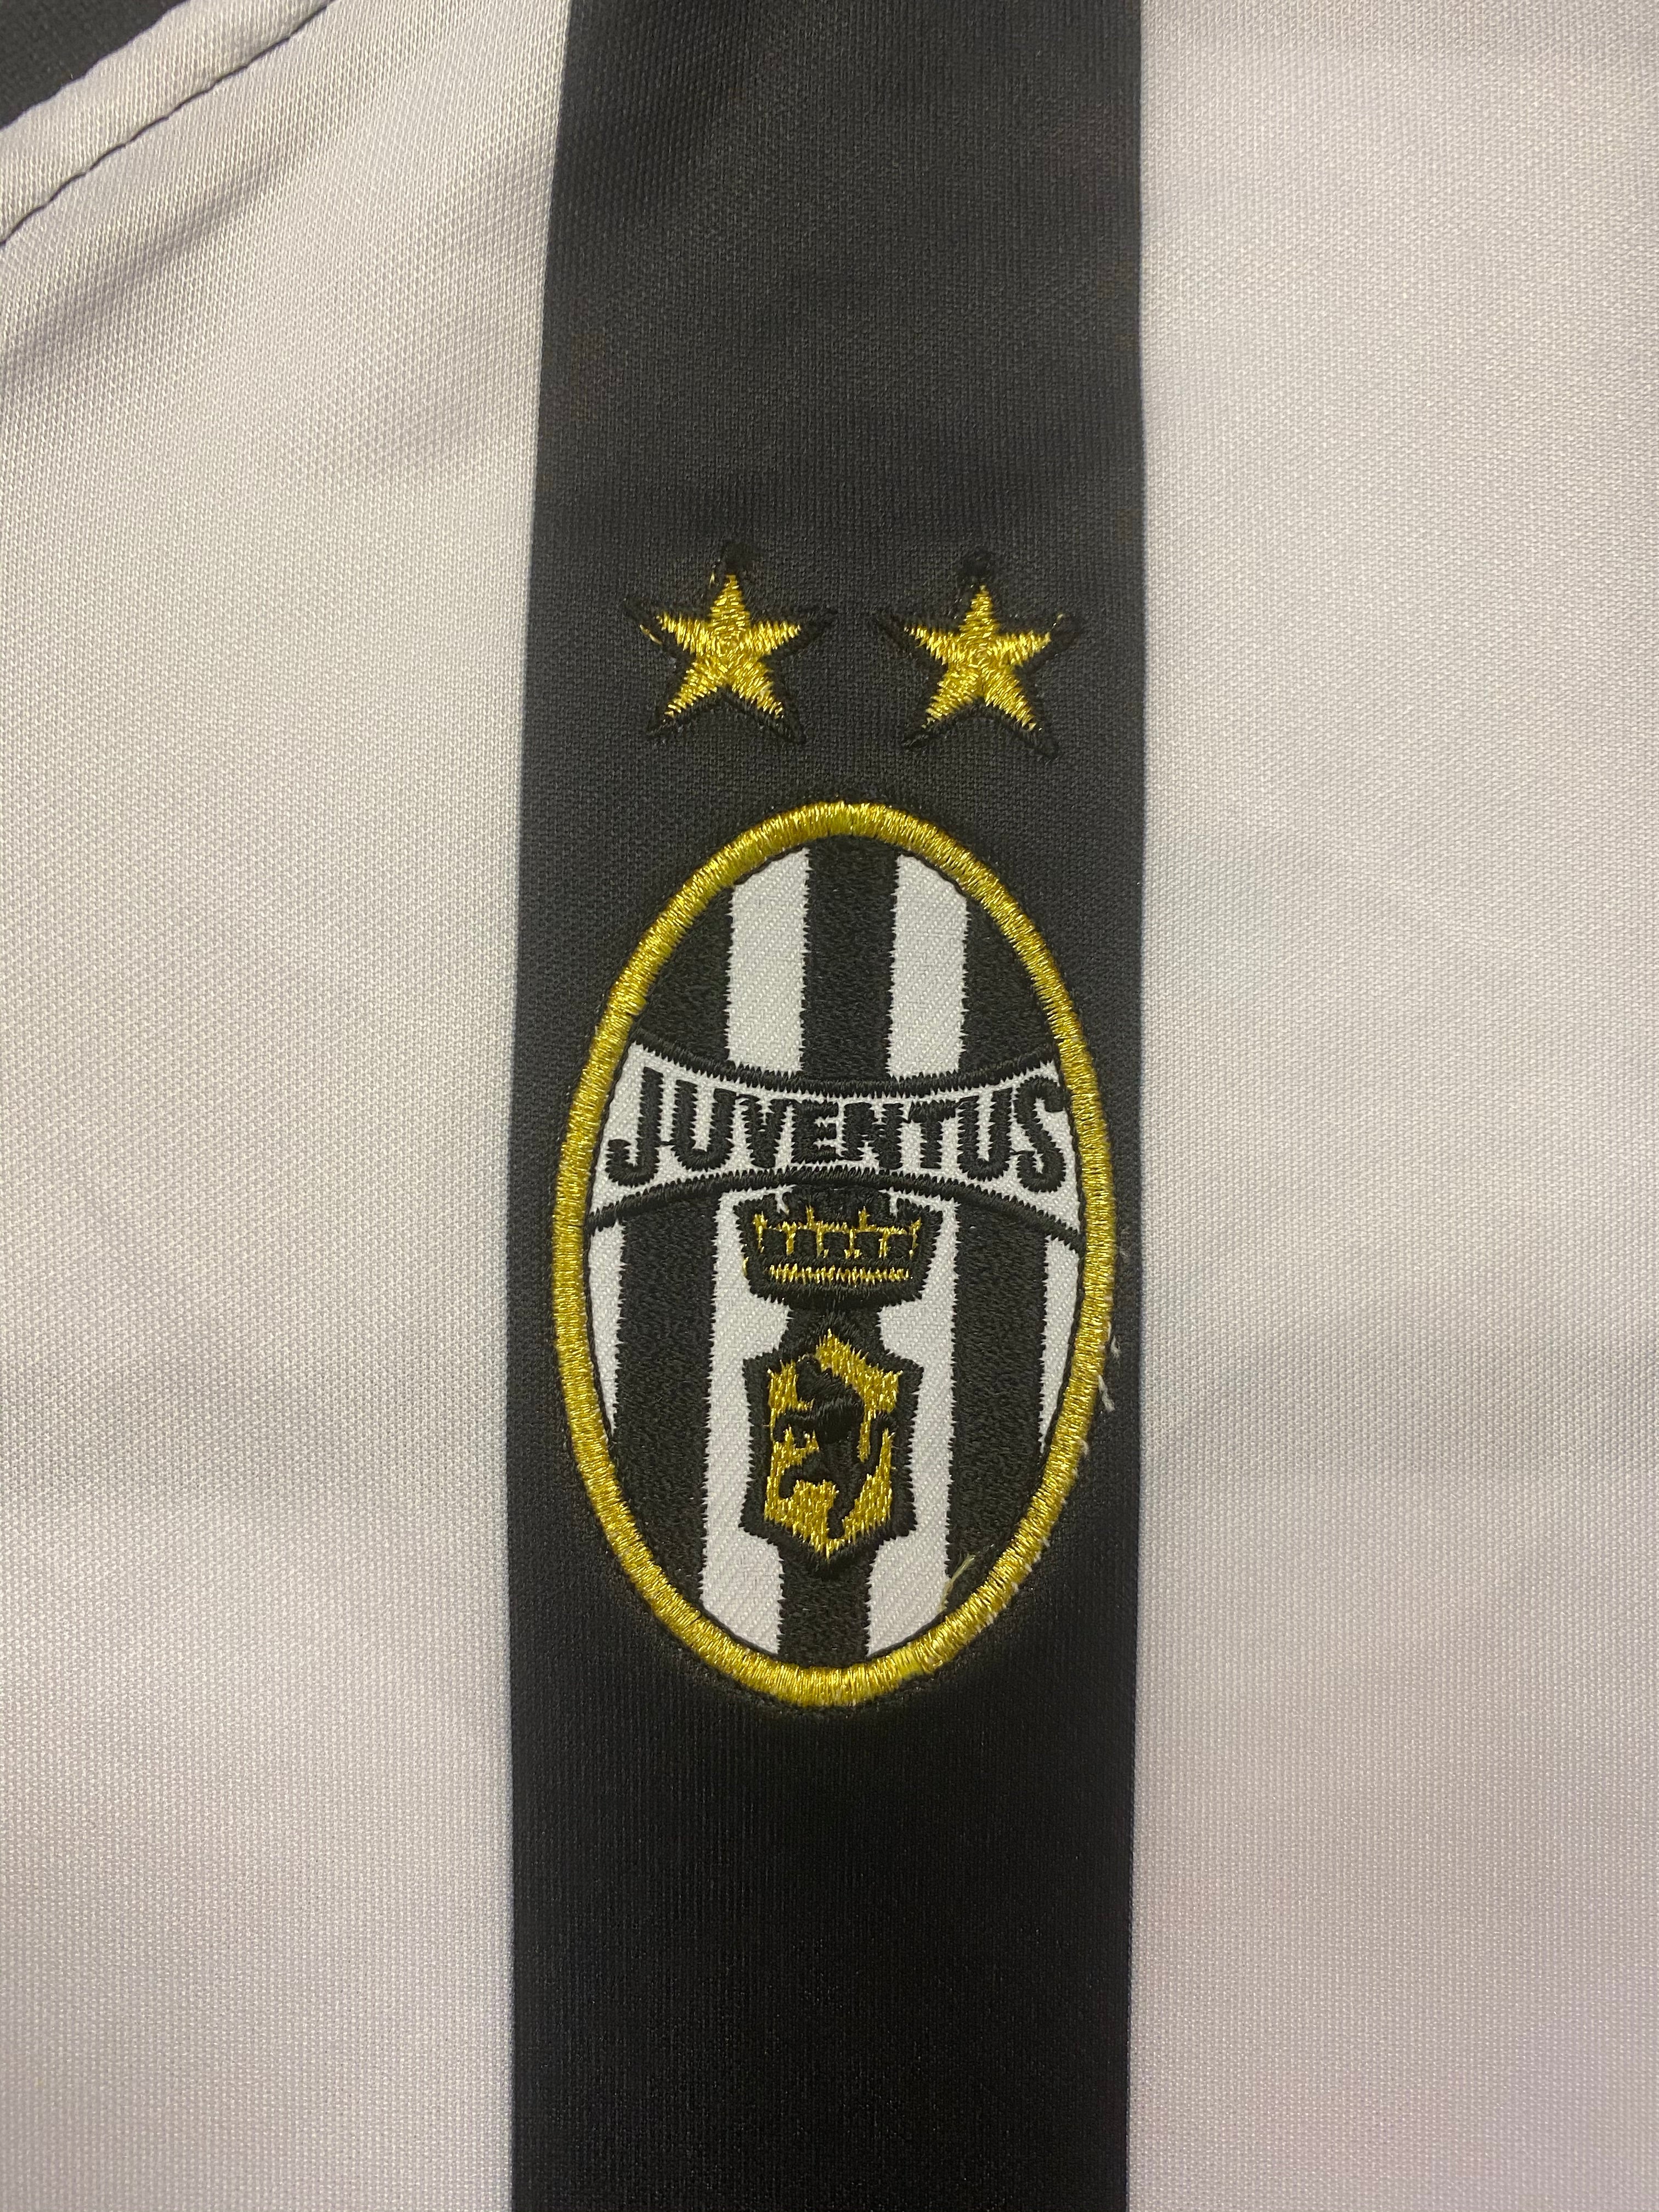 2001/02 Juventus Home Shirt (L) 9/10